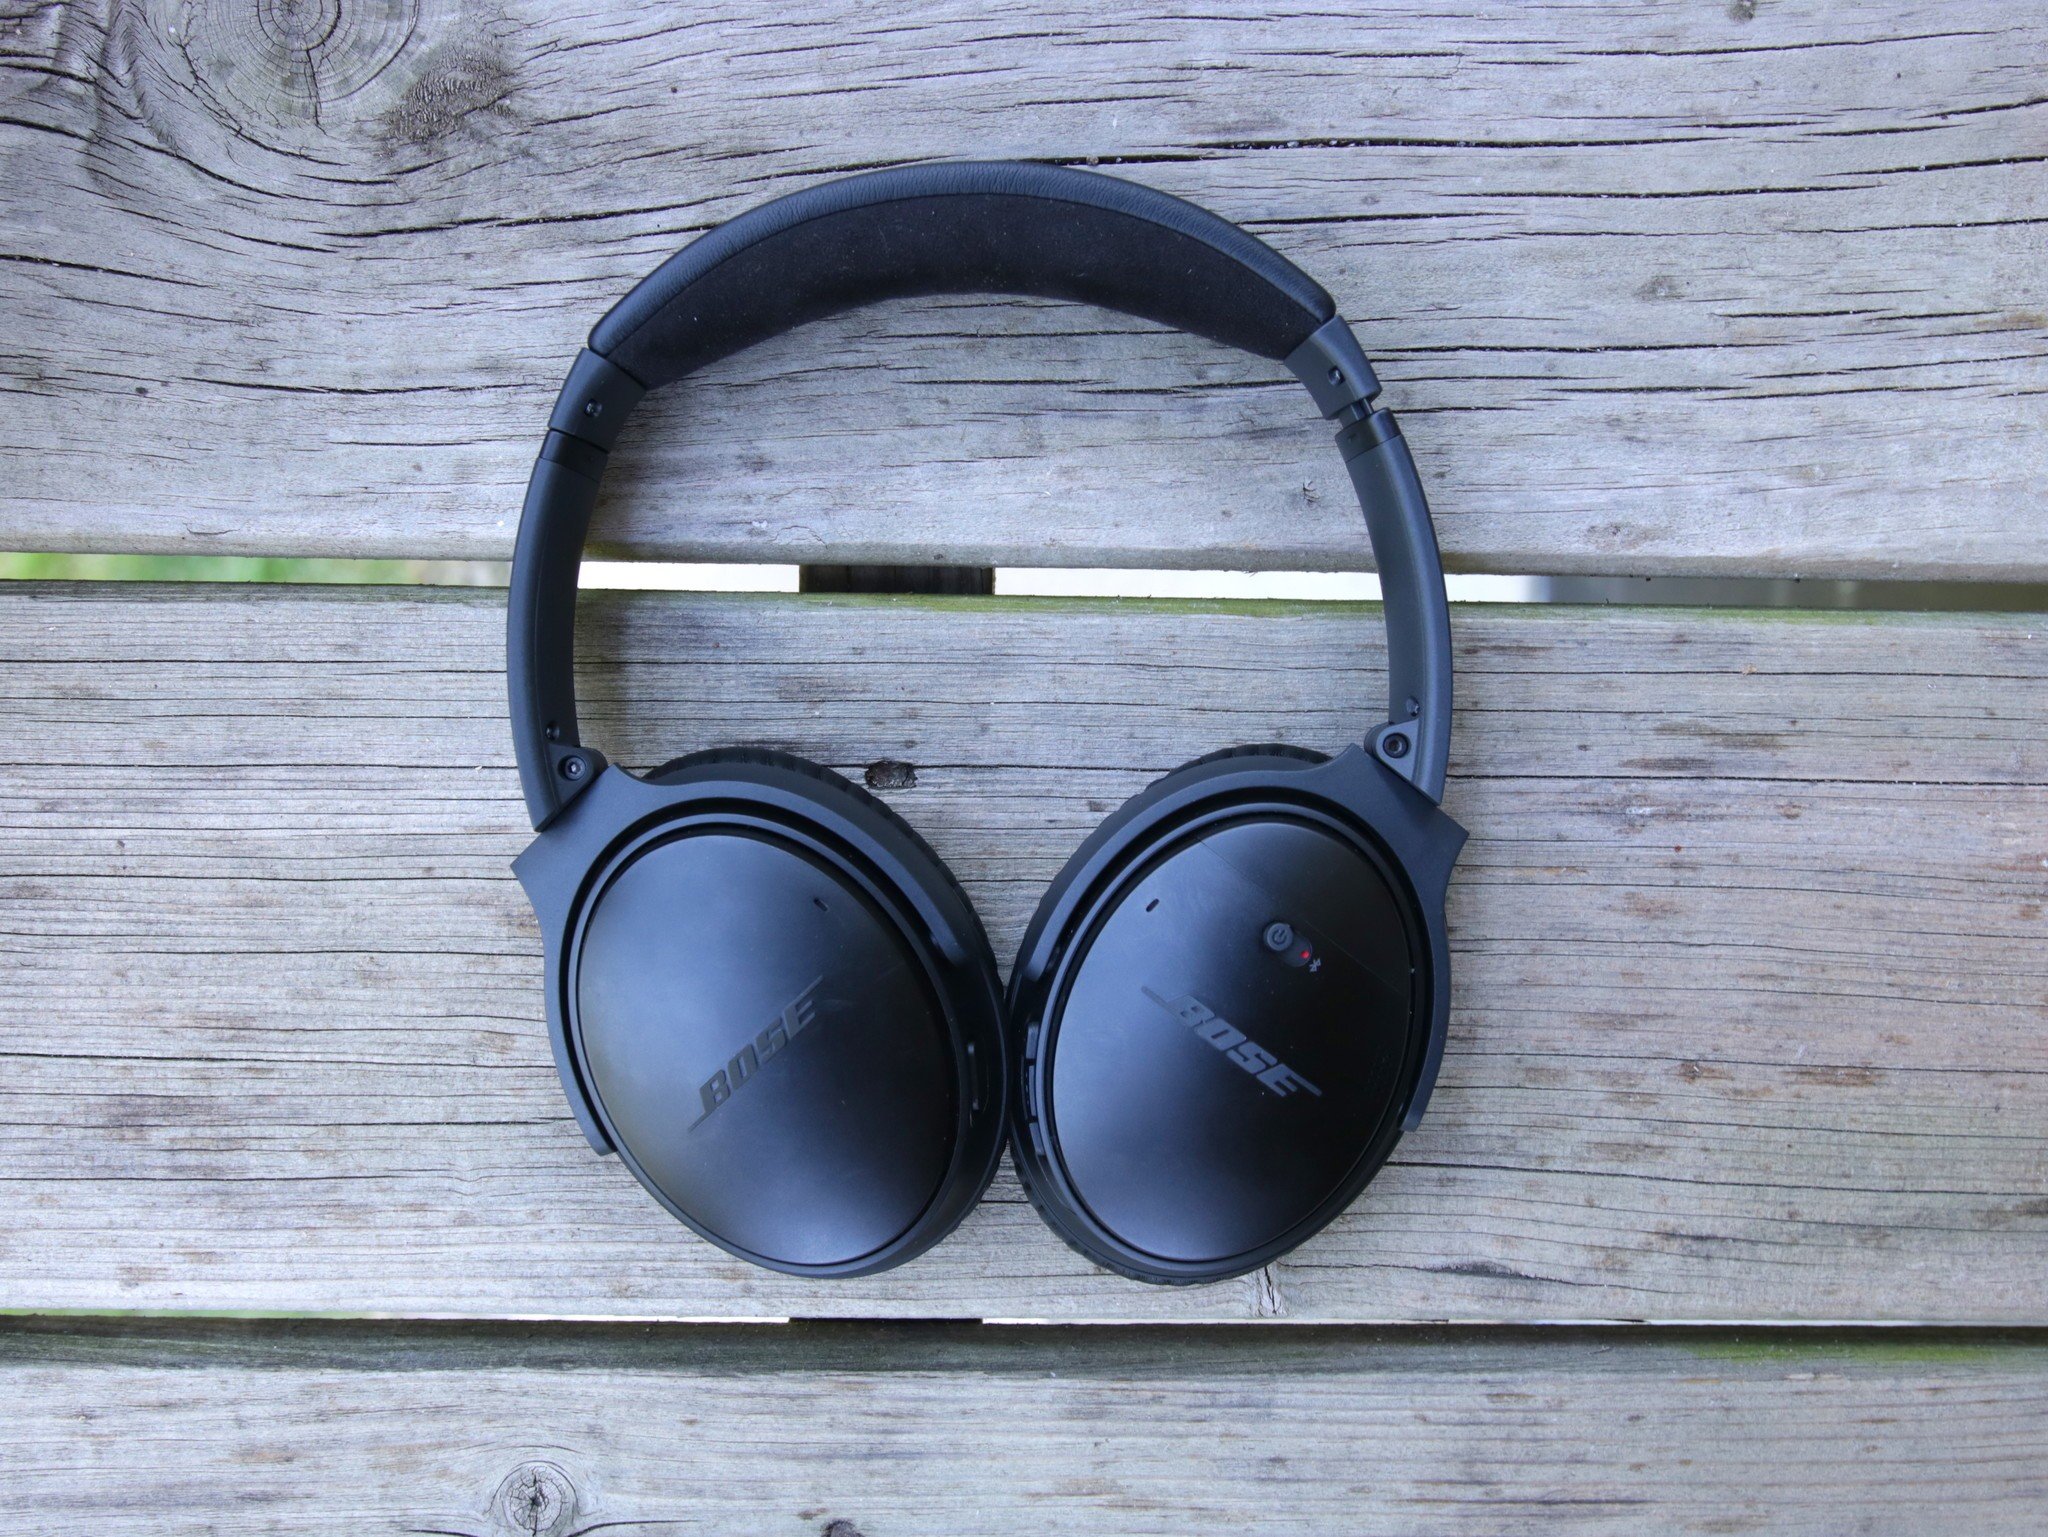 Knurre hvor som helst hvede Bose QC35 vs. Soundlink Wireless Headphones II: Which should you buy? |  Android Central